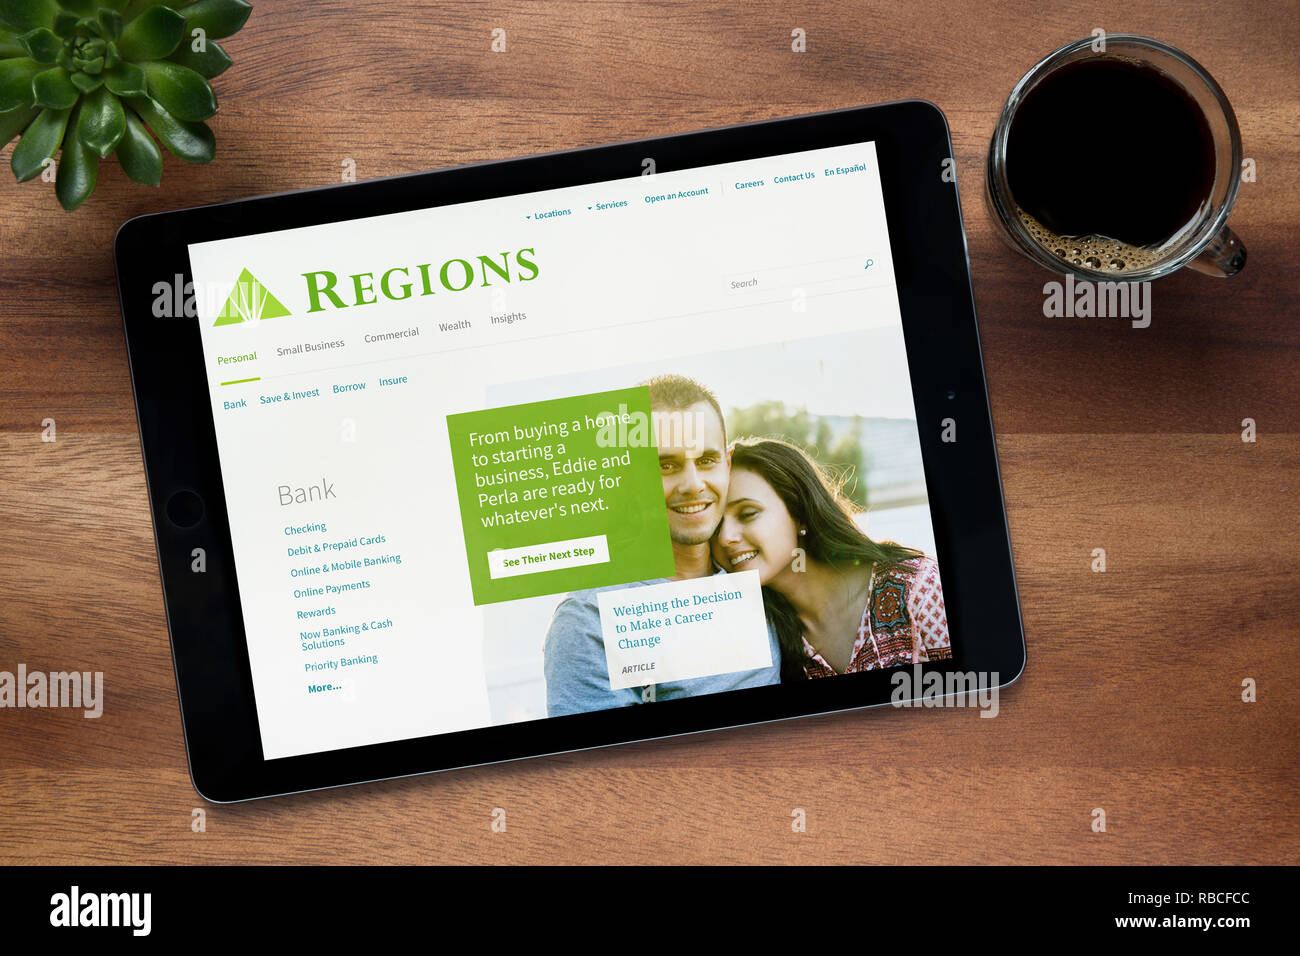 Il sito web di regioni Financial Corporation è visto su un tablet iPad, appoggiato su una tavola di legno (solo uso editoriale). Foto Stock